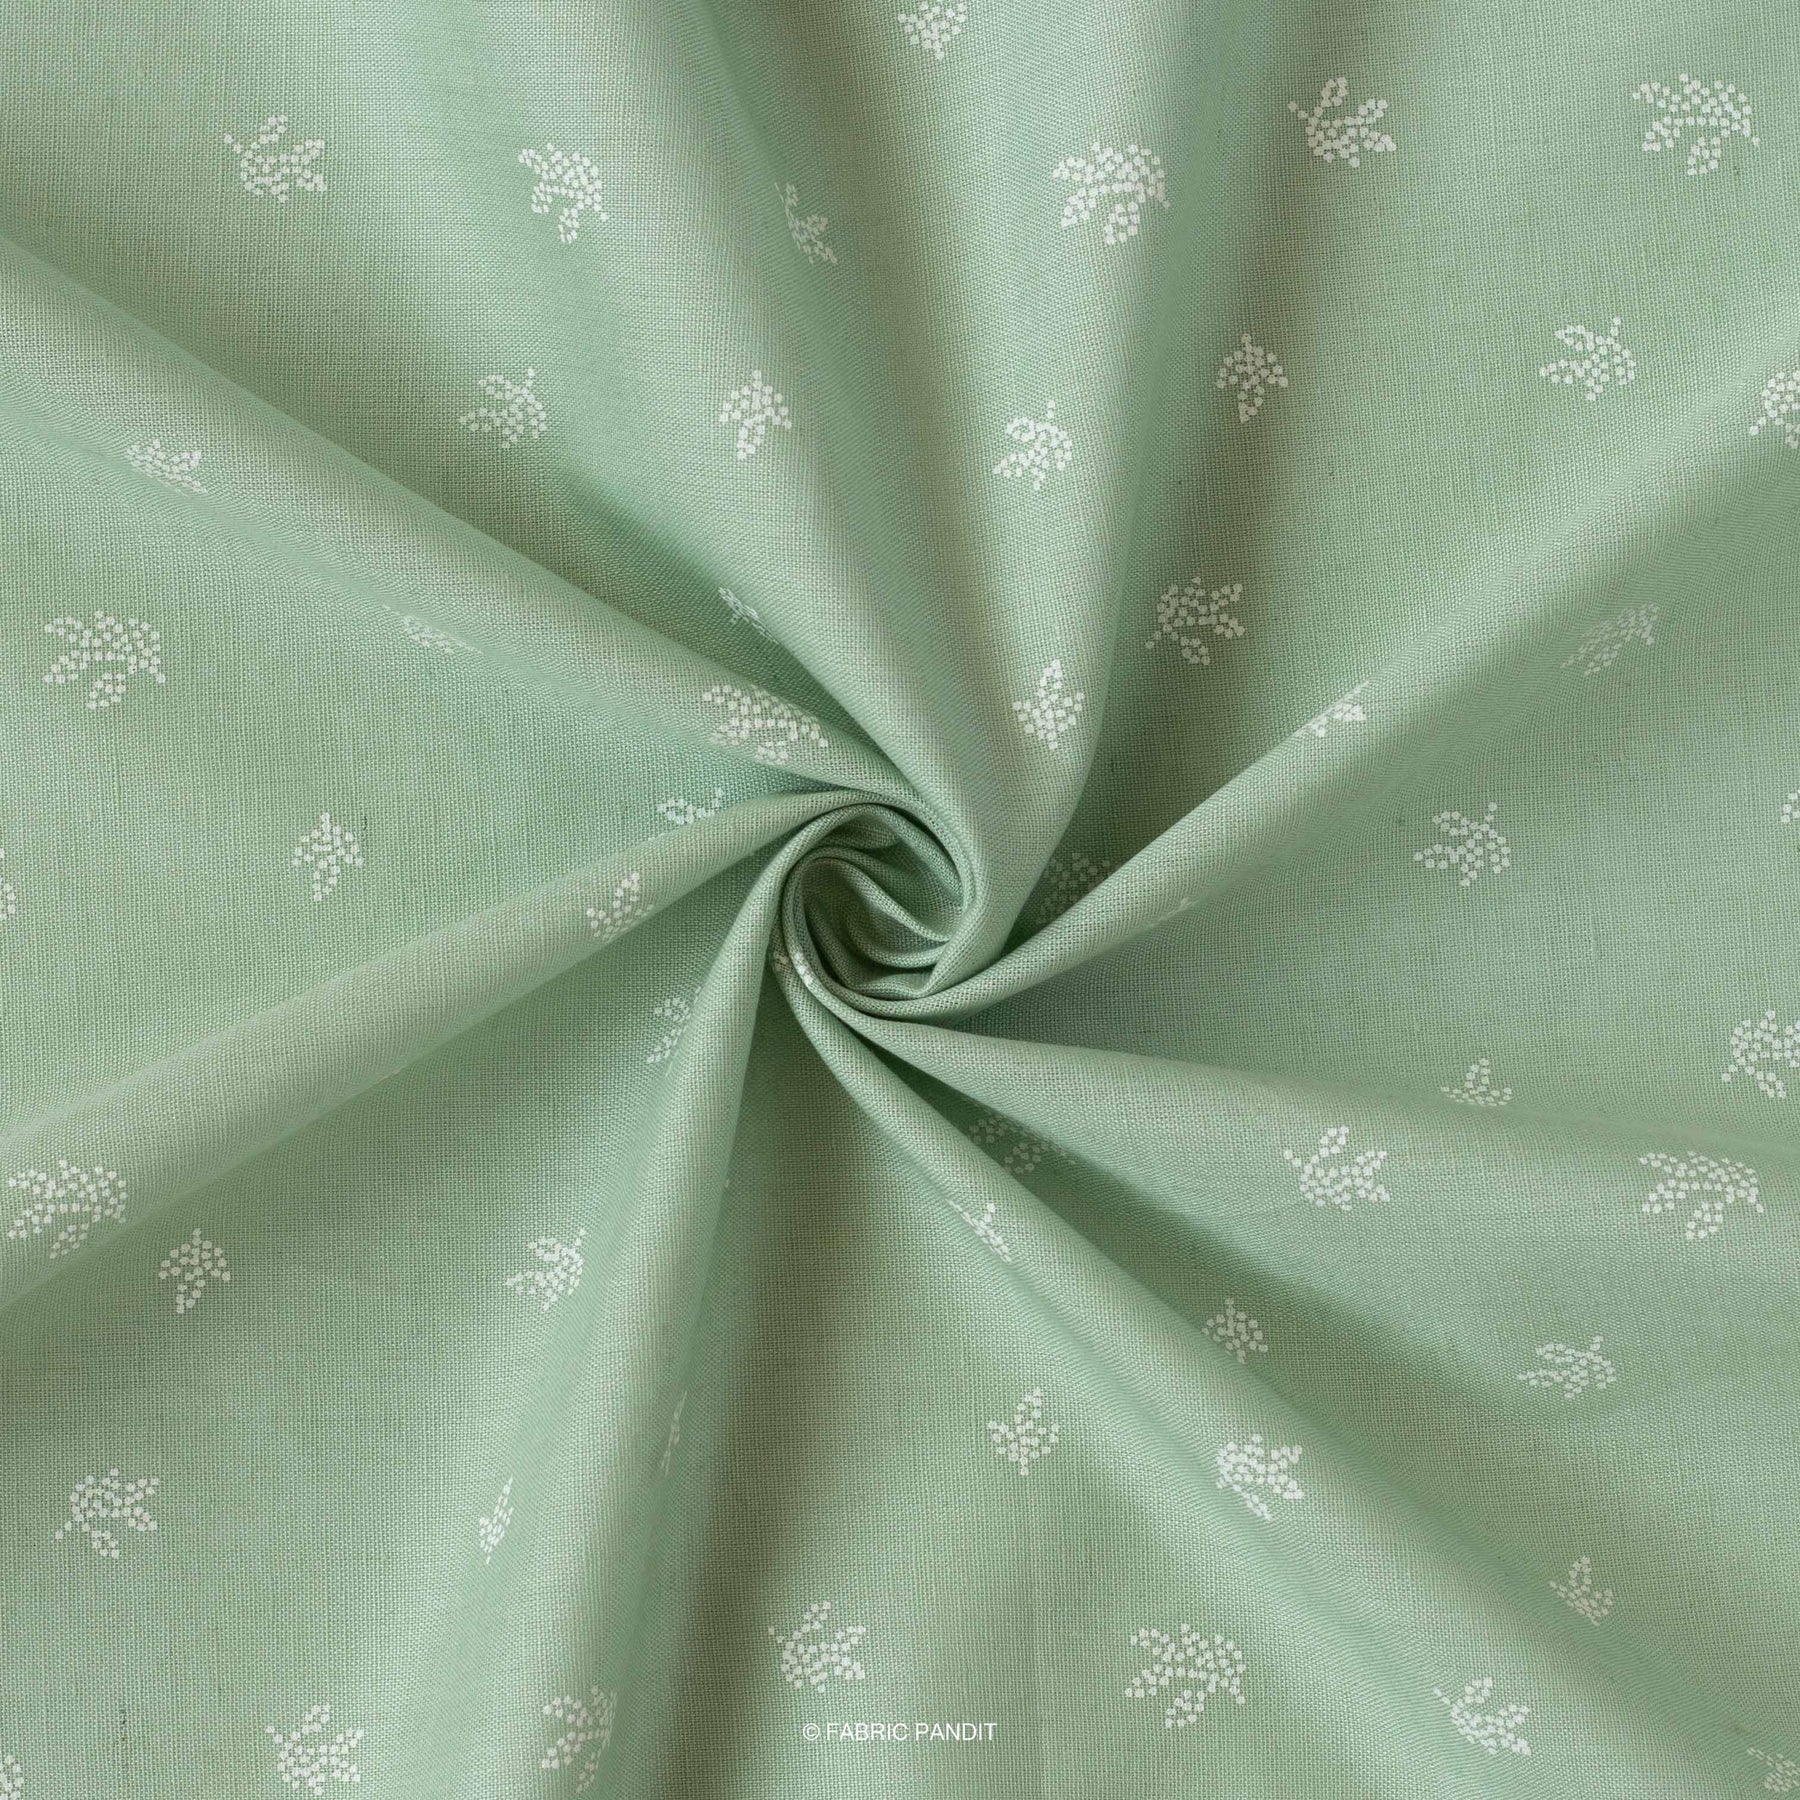 CUT PIECE) White Dyeable Pure Lawn Cotton Satin Plain Fabric (Width 4 –  Fabric Pandit